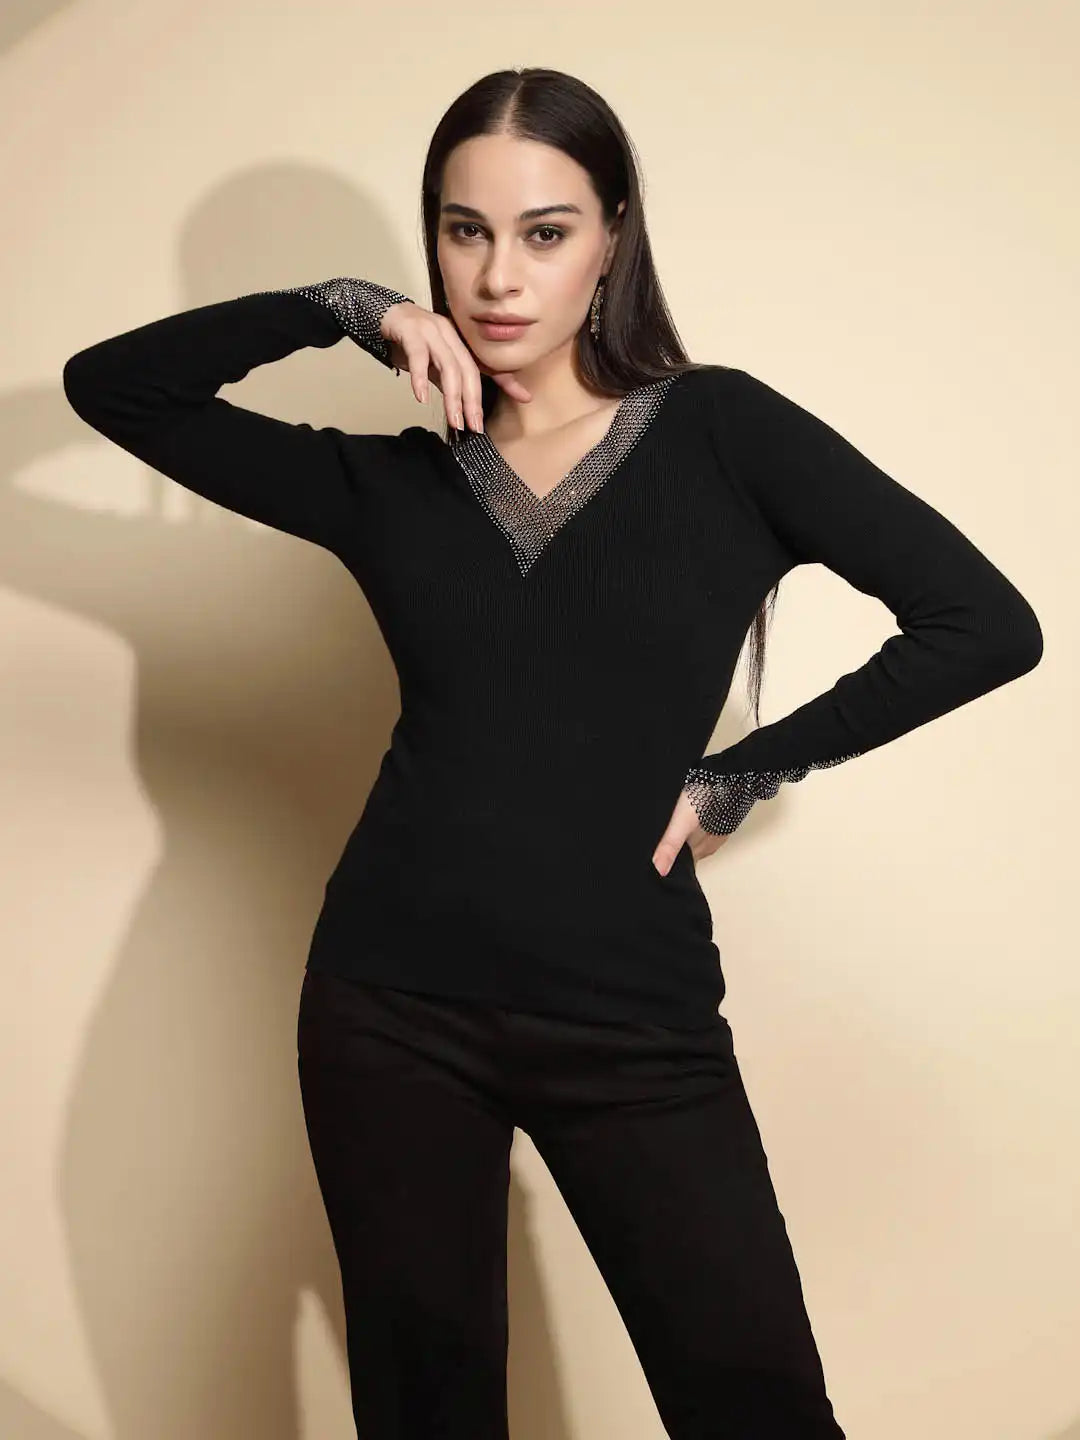 Black Embellished Full Sleeve V-Neck Casual Pullover